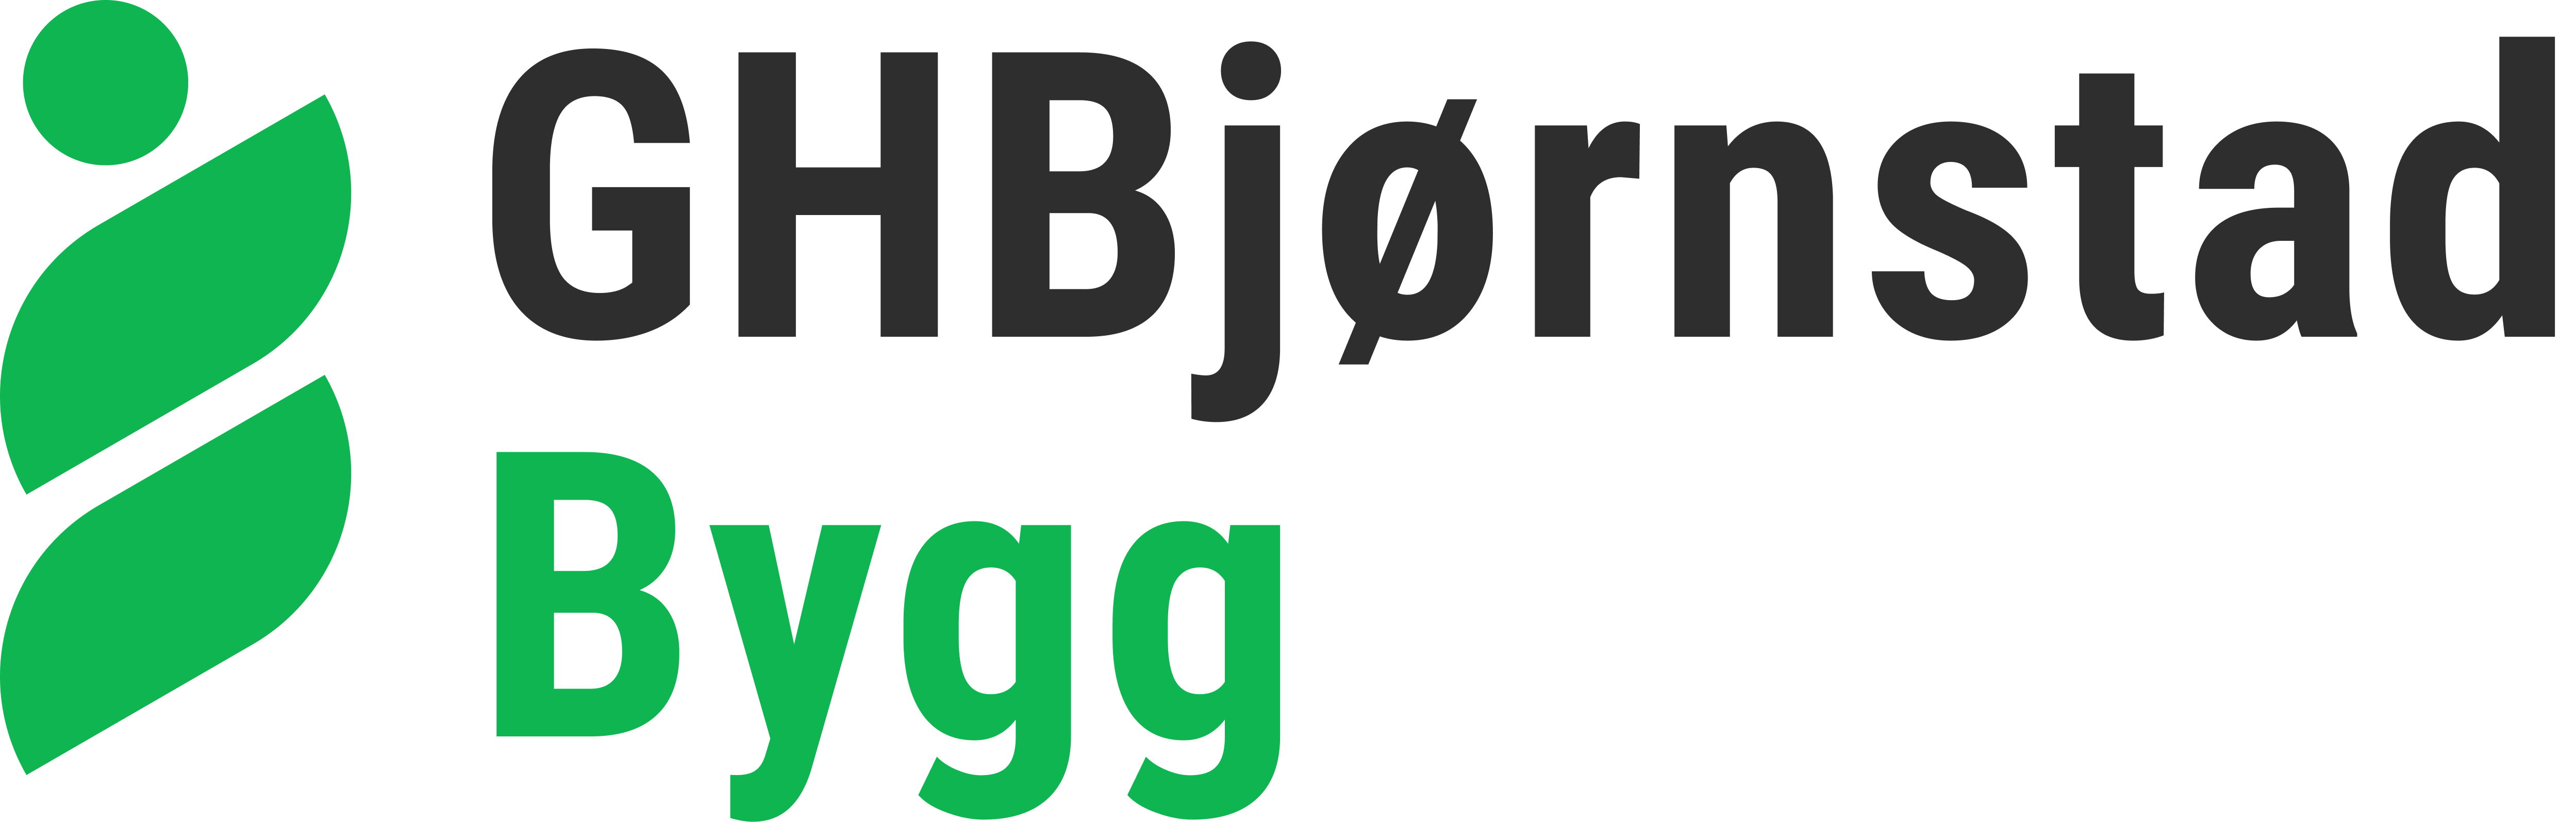 G H Bjørnstad Bygg logo